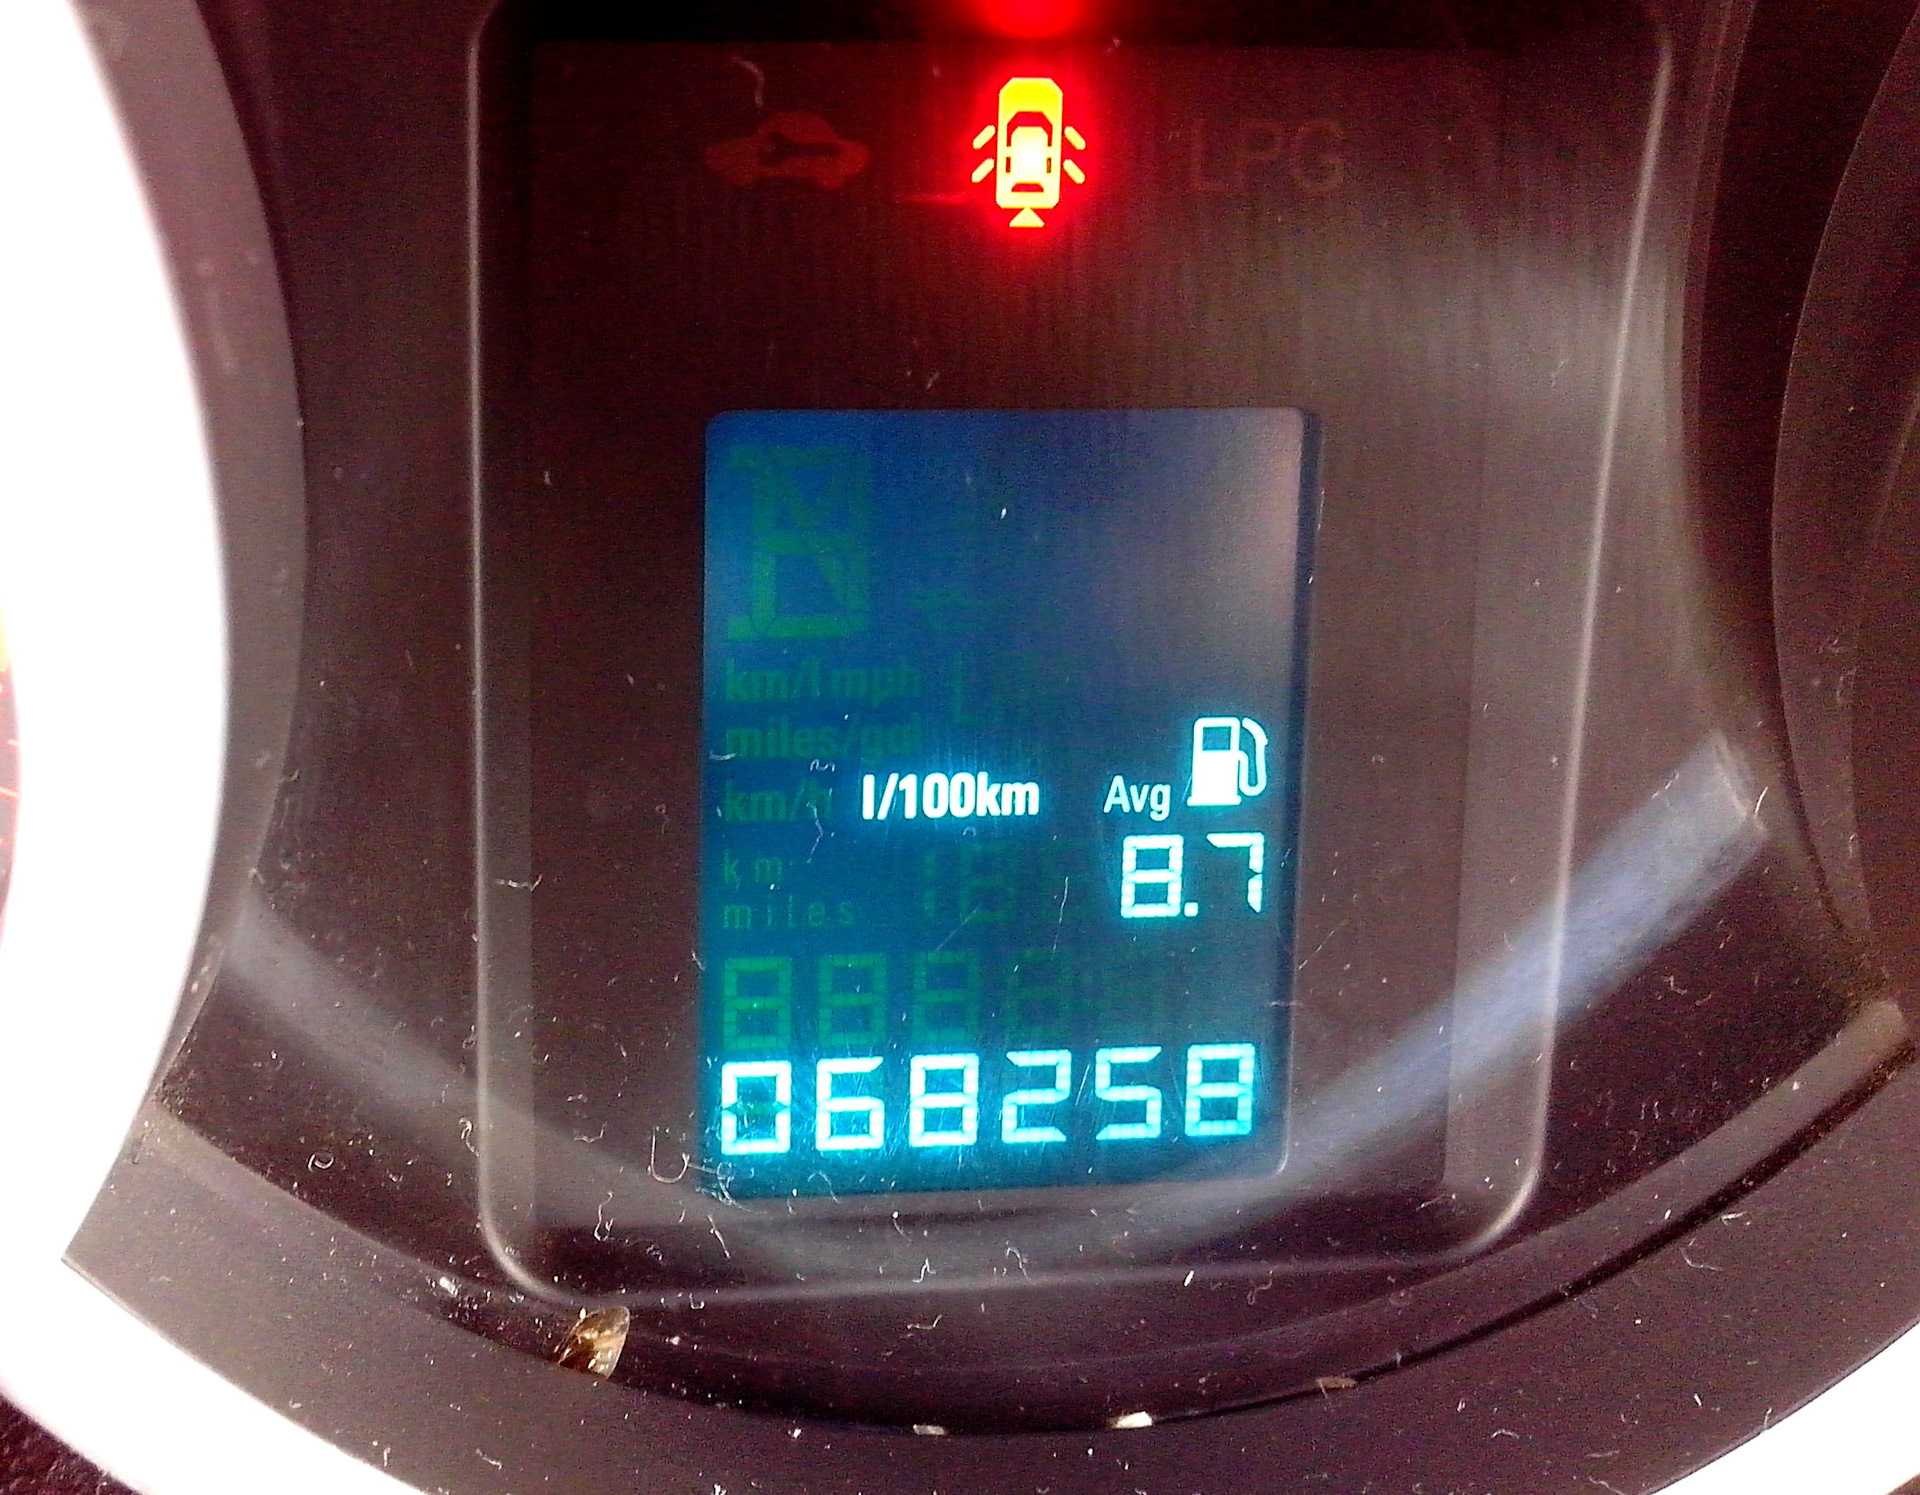 Шевроле круз 2011 года, 1.6 литра, приобрёл данный автомобиль почти год назад, автомат, расход 6, 6-12, омская область, sl, бензин